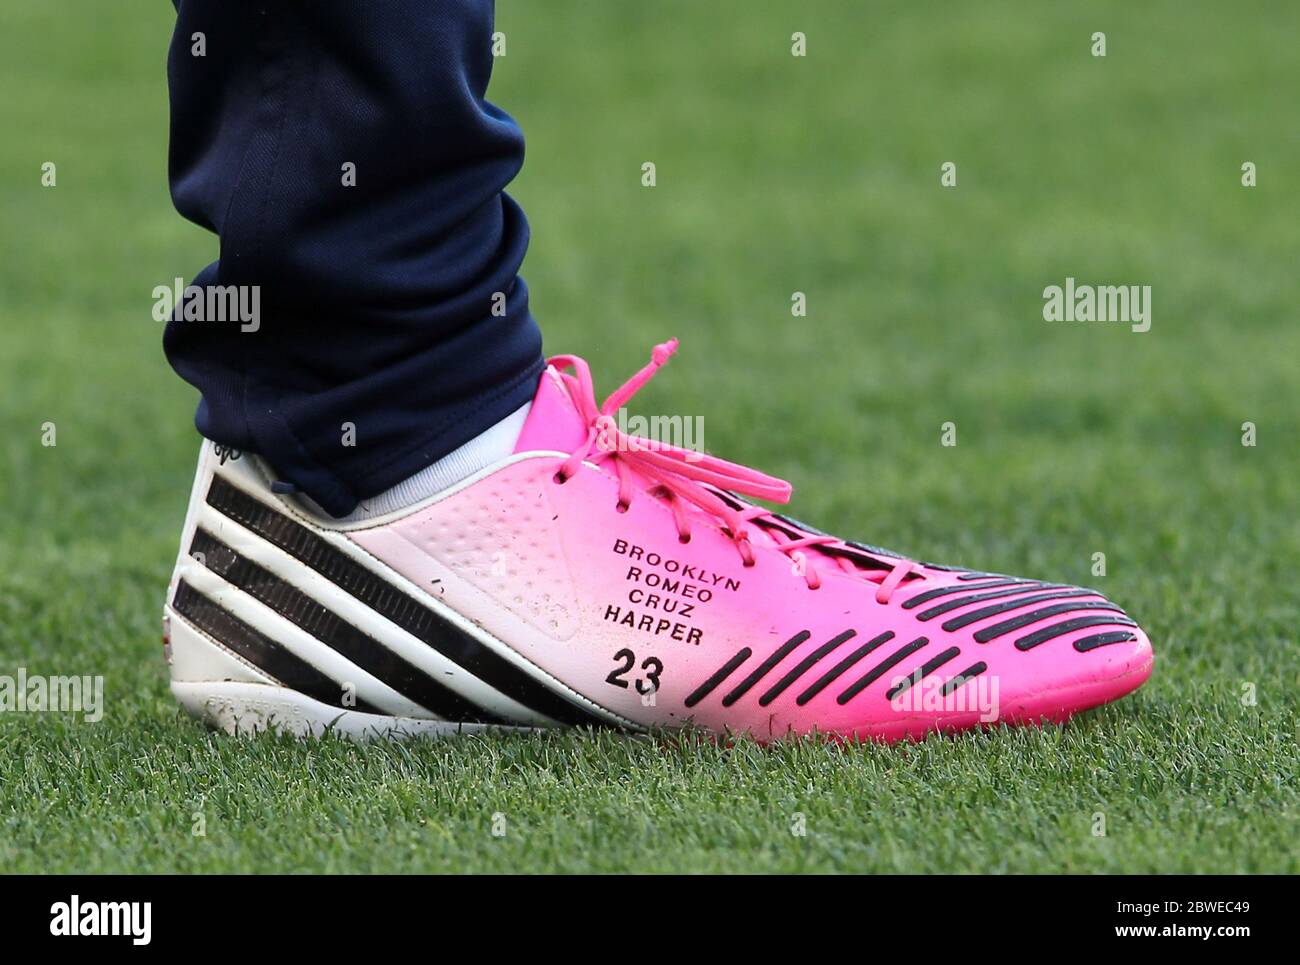 David Beckham lleva botas de fútbol de color rosa con sus nombres de niños en ellos él como sustituto la derrota LA Galaxy 1-0 a Chivas USA, Carson,